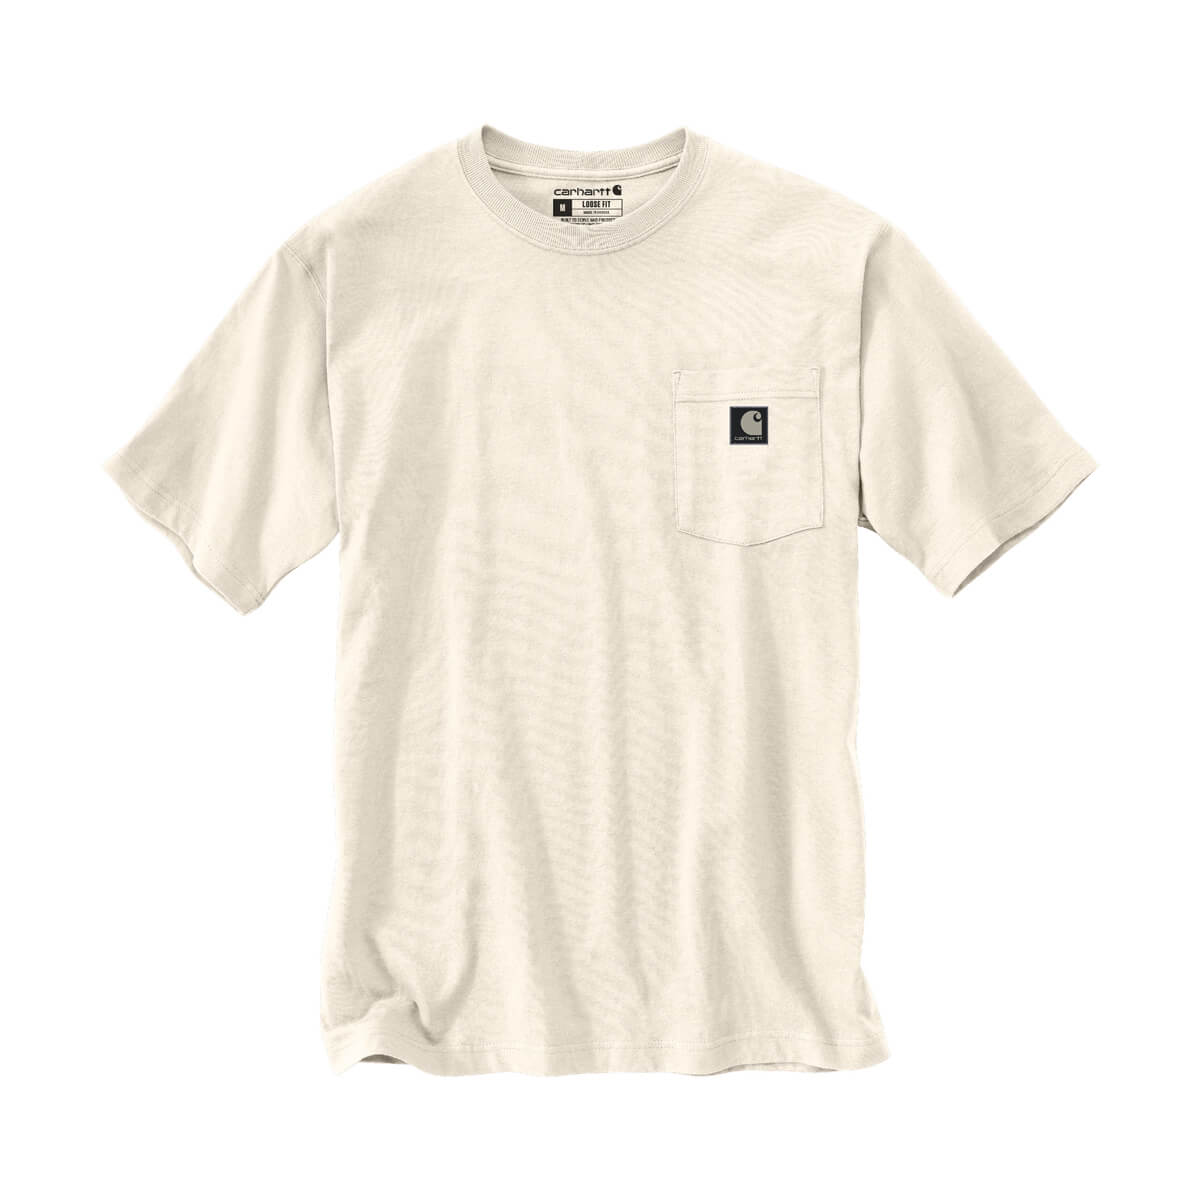 Carhartt Men's Loose Fit Heavyweight Short-Sleeve Camo Graphic T-Shirt - Malt